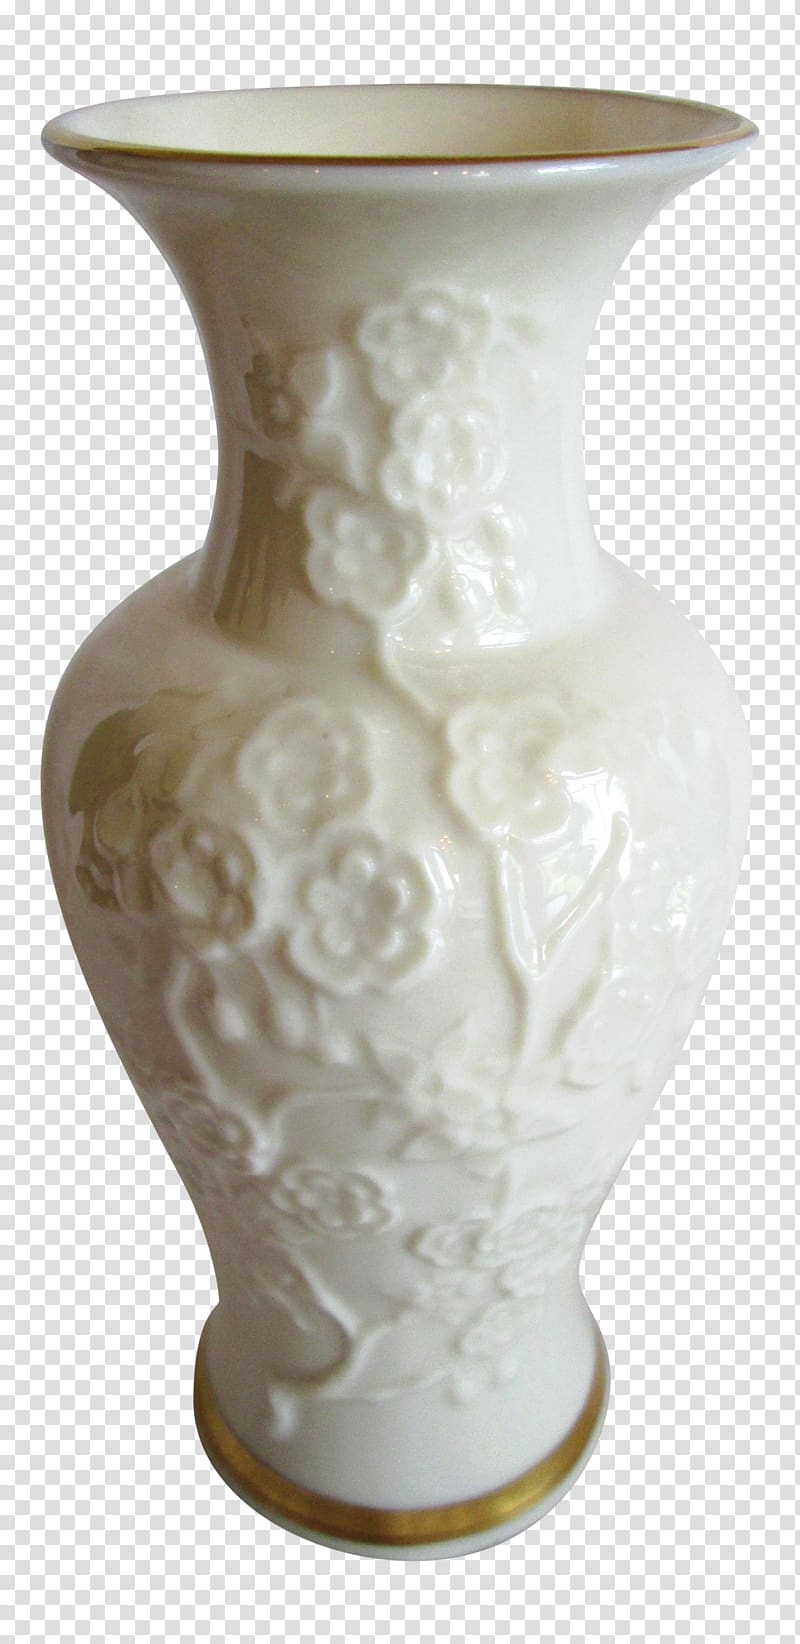 Vase Lenox Ceramic Porcelain Urn, vase transparent background PNG clipart